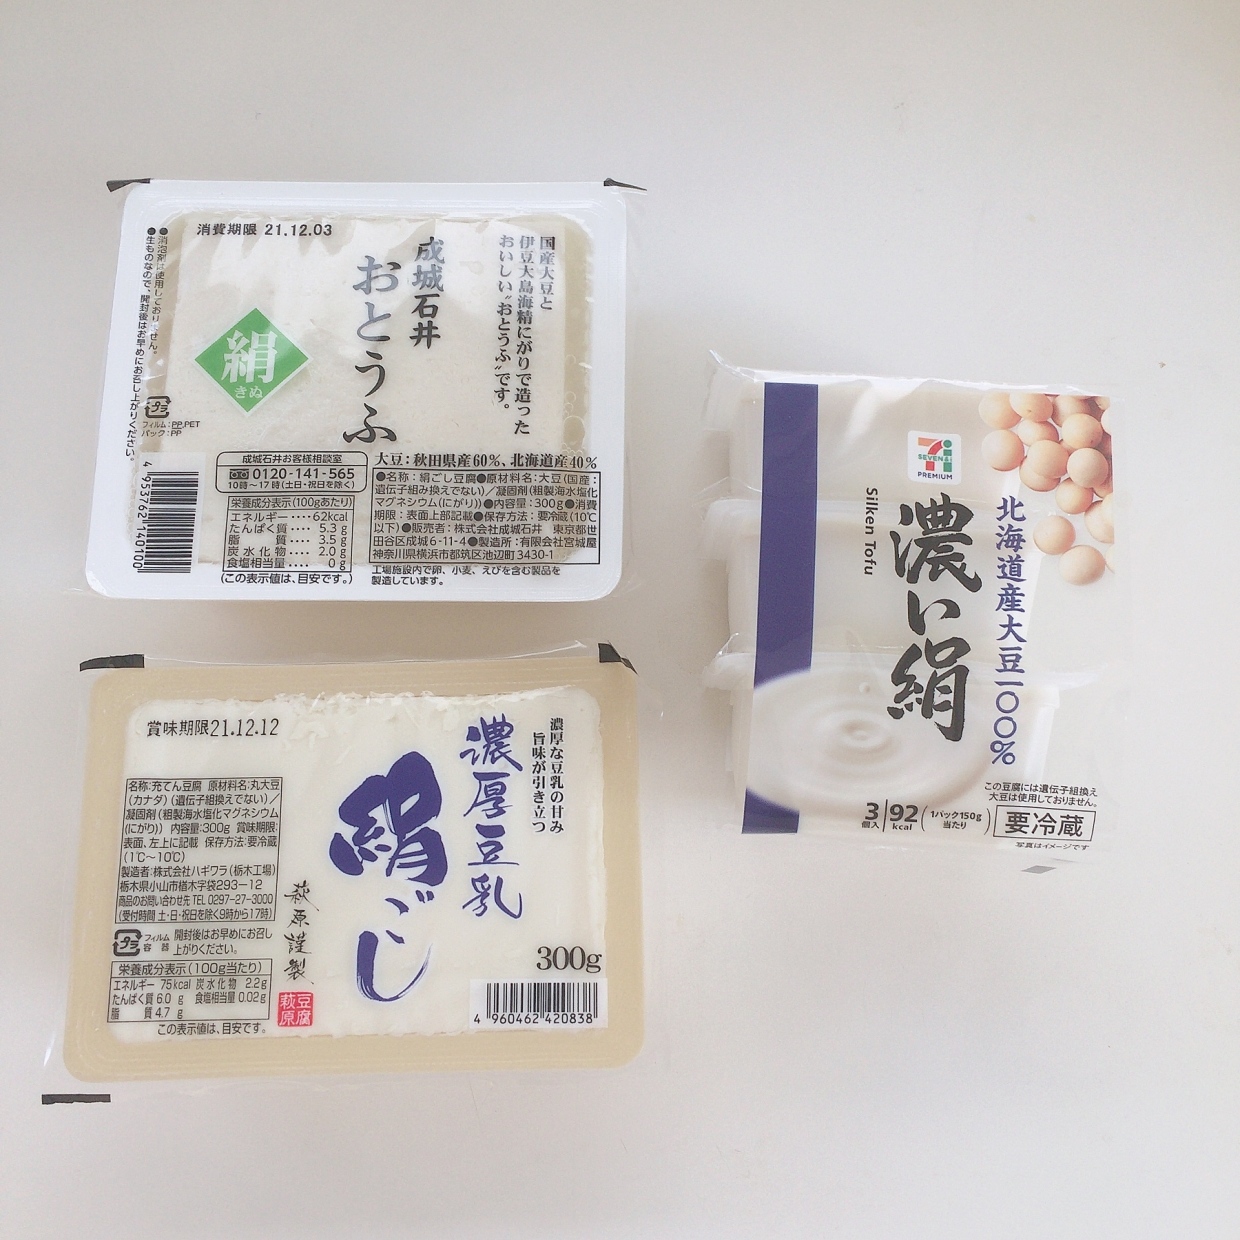  「成城石井」「業務スーパー」「セブン」の絹豆腐を徹底比較！ 